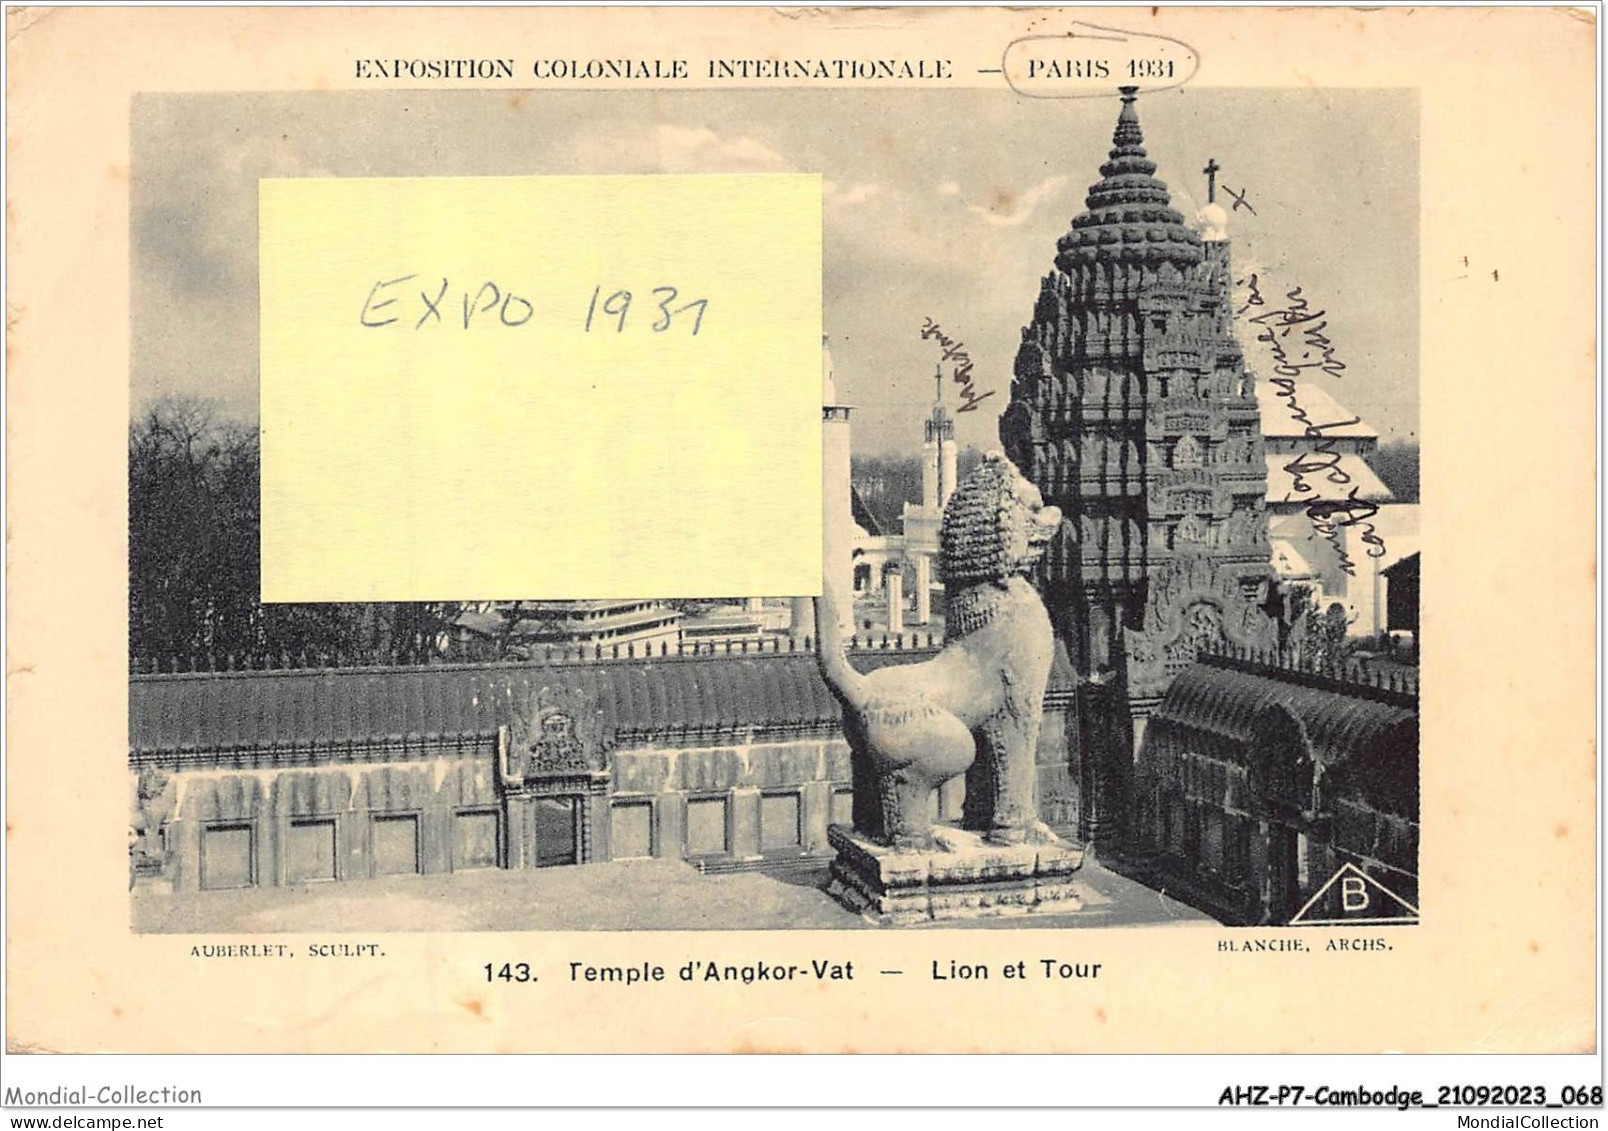 AHZP7-CAMBODGE-0630 - EXPOSITION COLONIALE INTERNATIONALE - PARIS 1931 - TEMPLE D'ANGKOR-VAT - LION ET TOUR - Cambodja